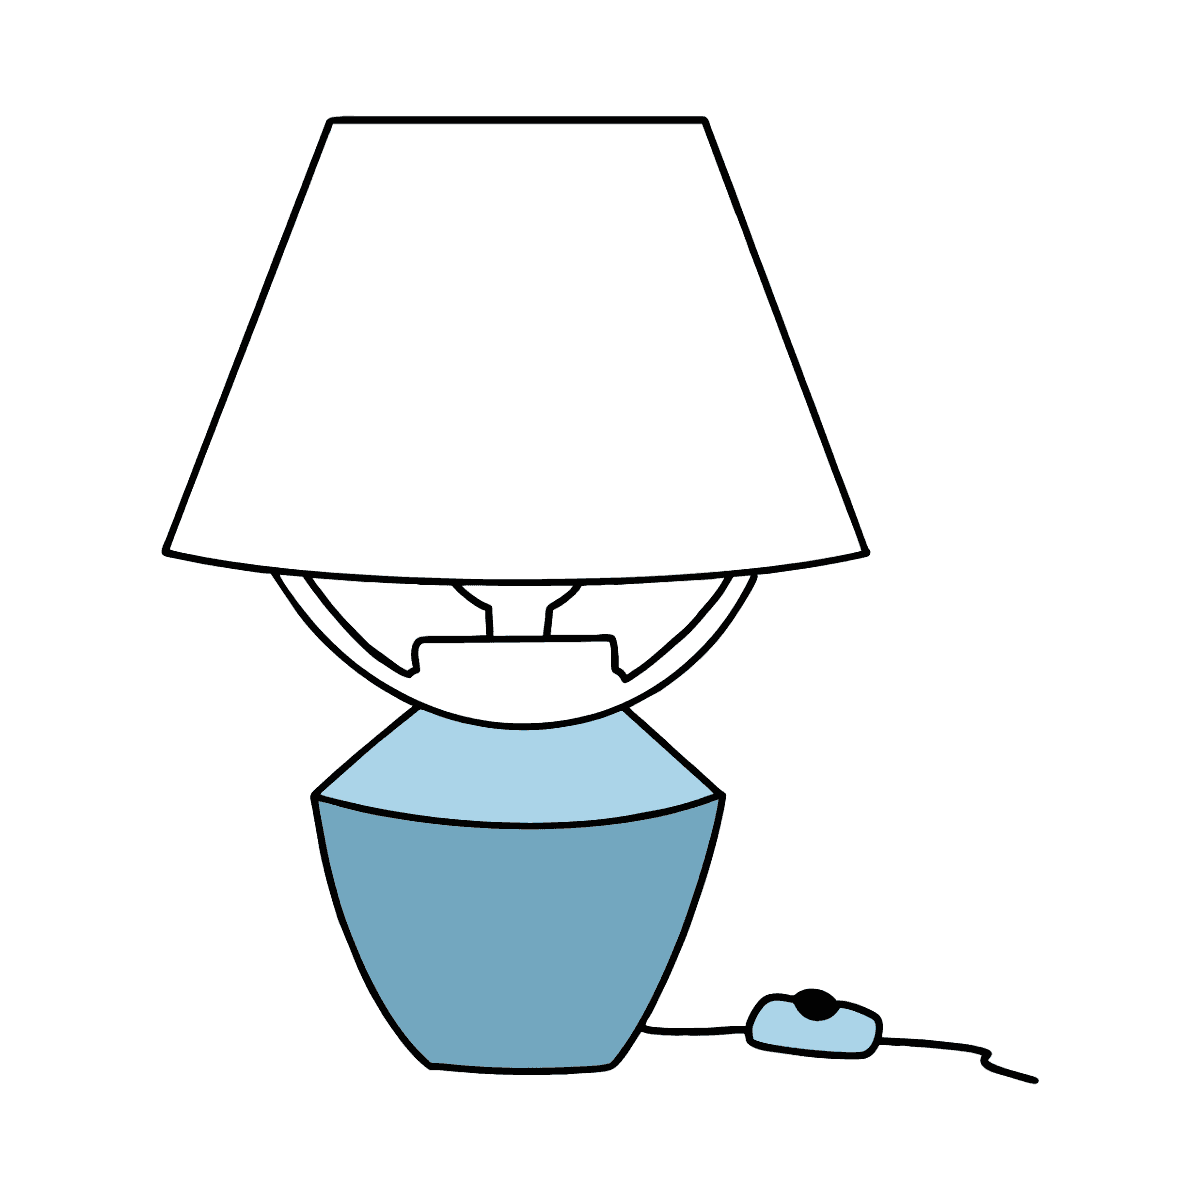 Нарисованная прикроватная лампа